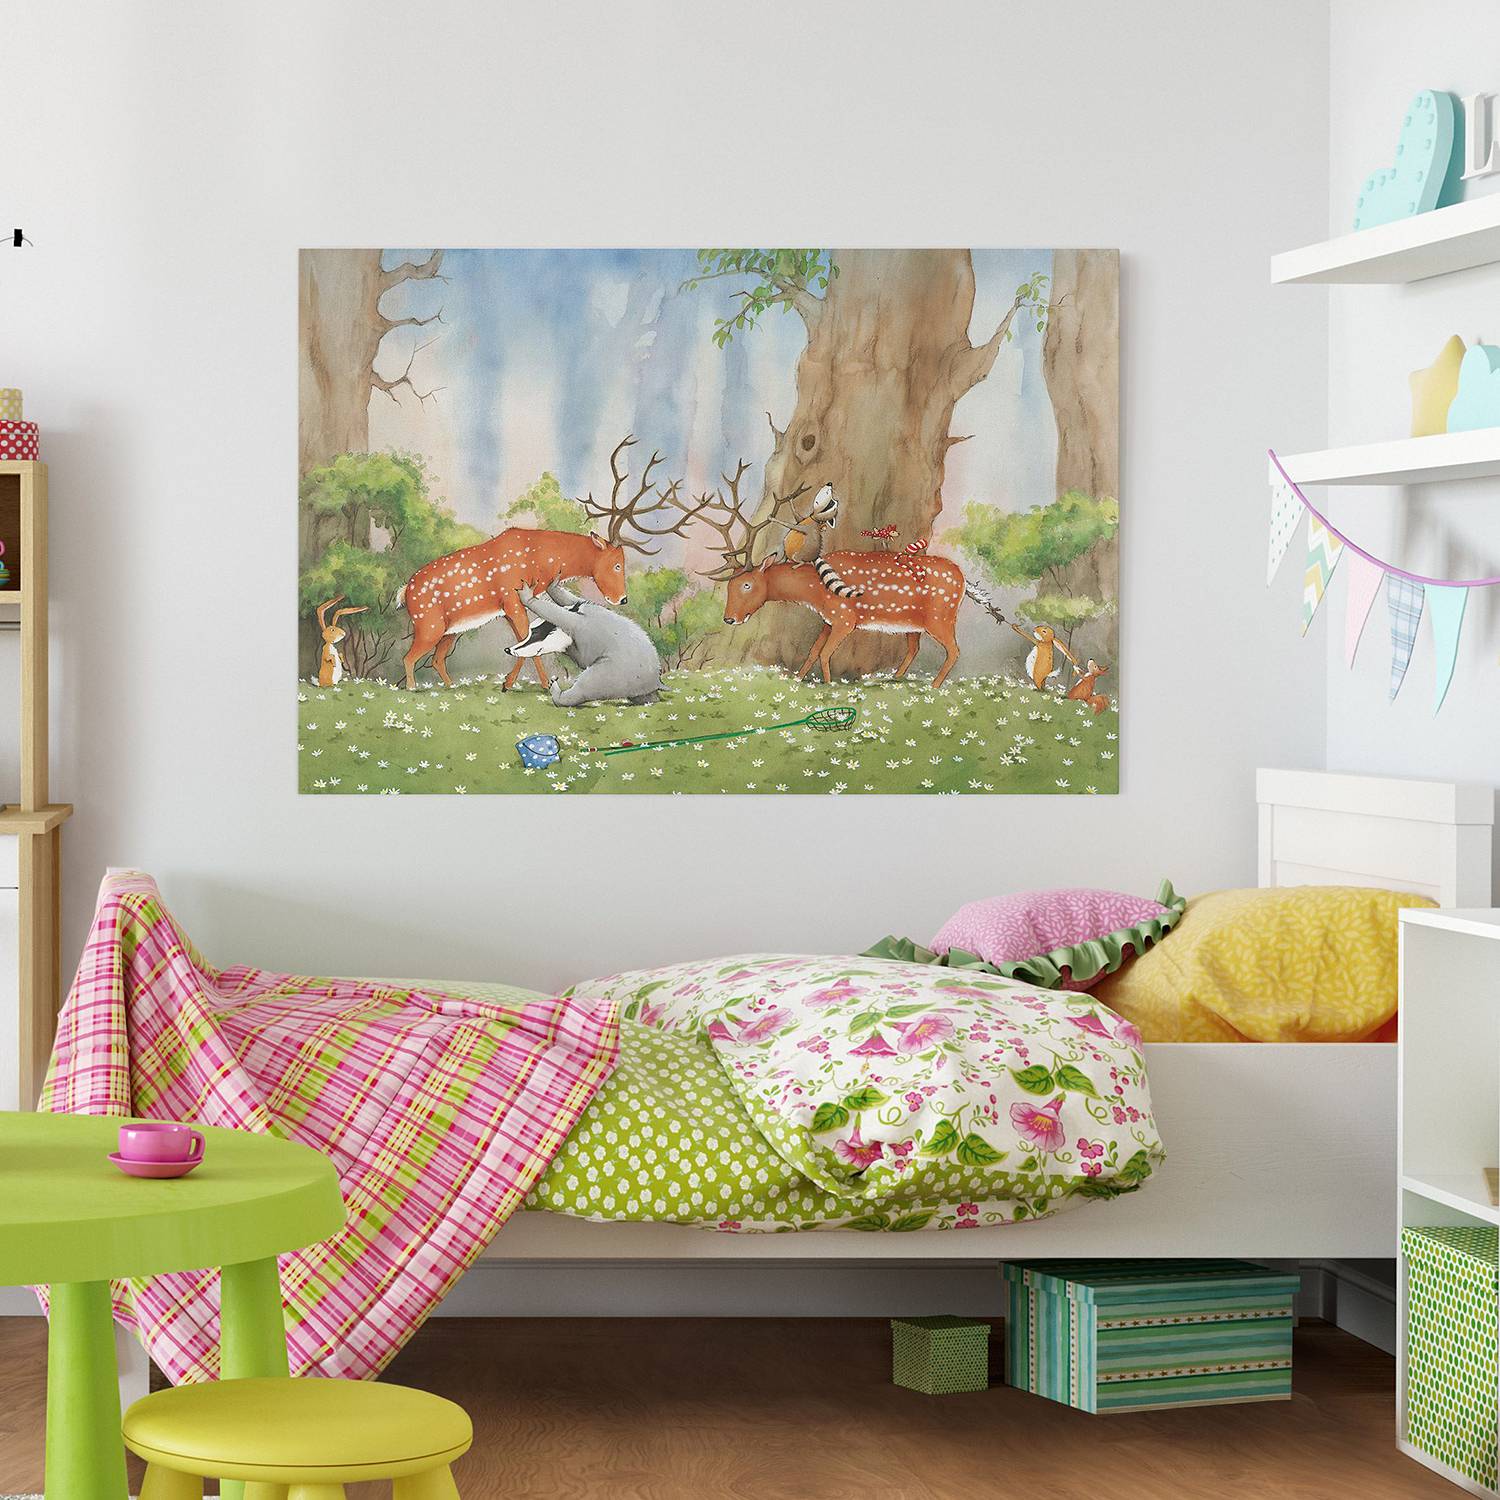 Kinderzimmer-Bilder und weitere Bilder & kaufen & online Günstig Rahmen. Möbel bei